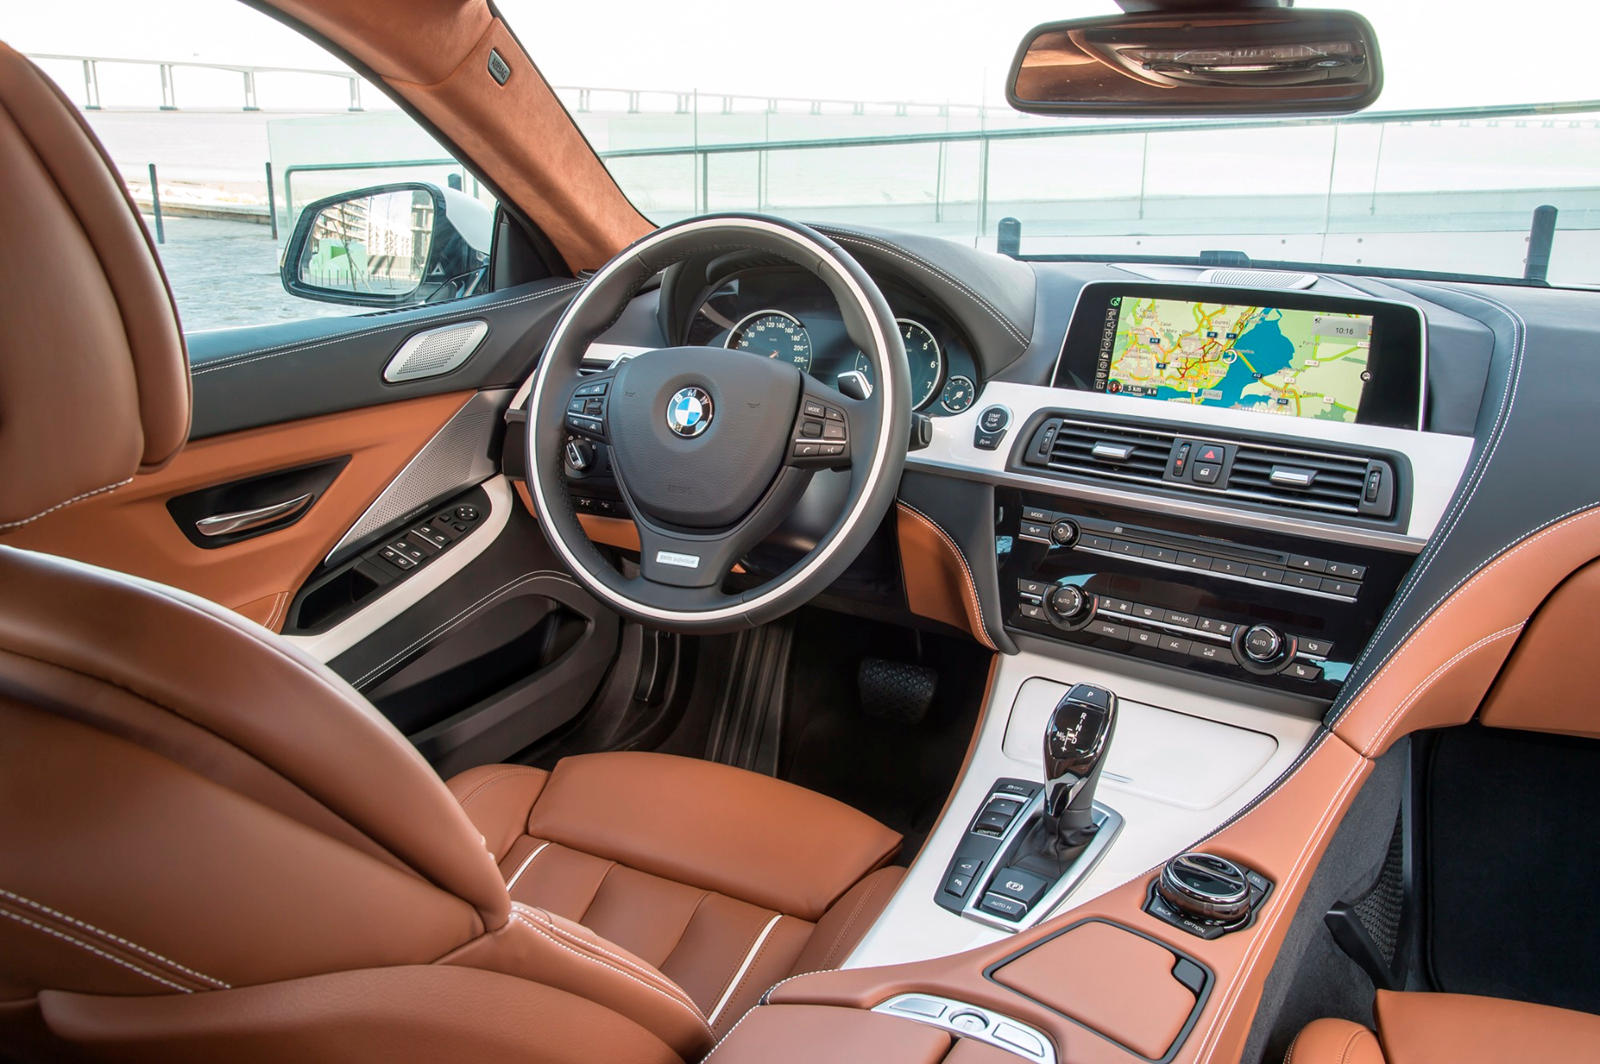 2015 BMW 6 Series Gran Coupe Interior Photos | CarBuzz